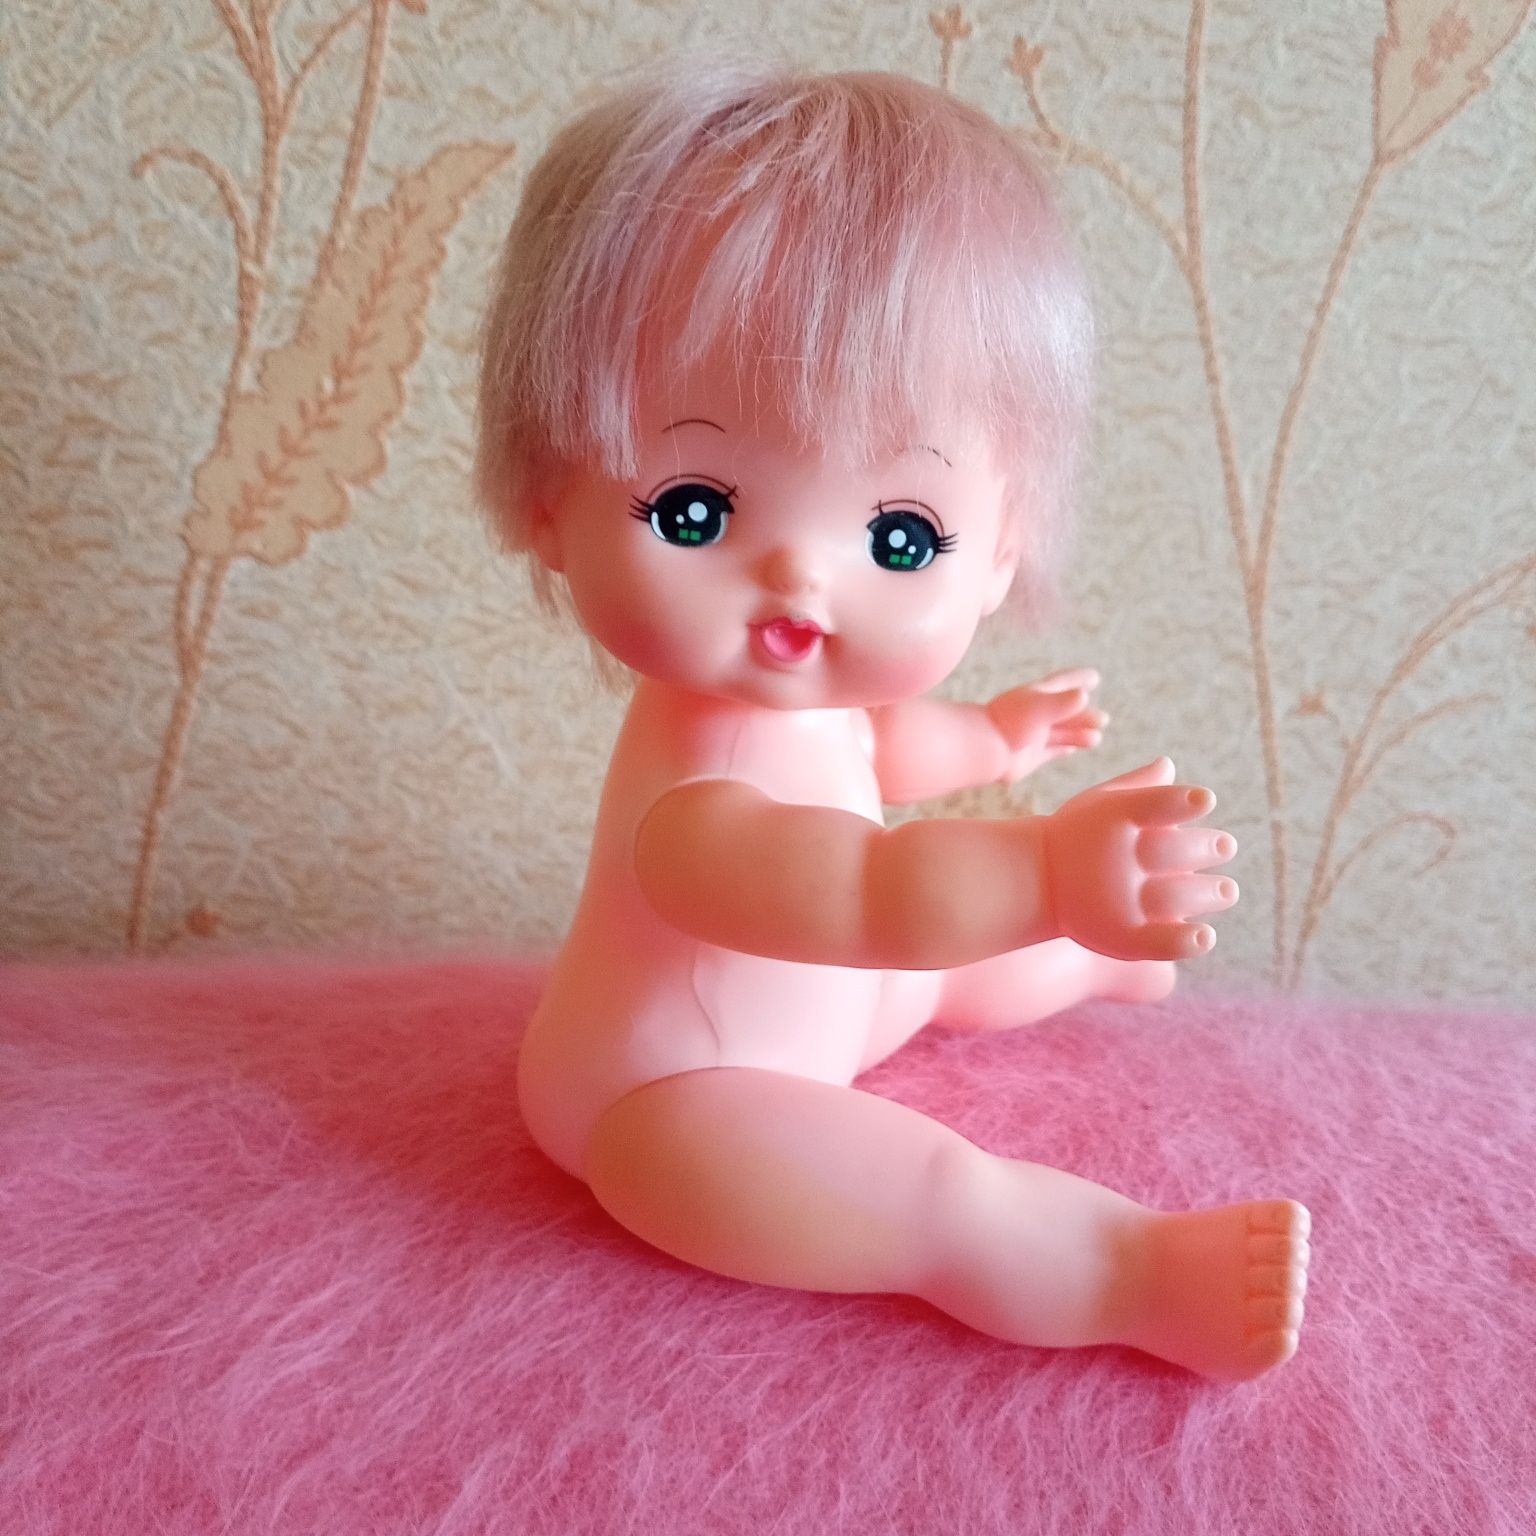 Продам куклу Pilotink производства Японии 24см.